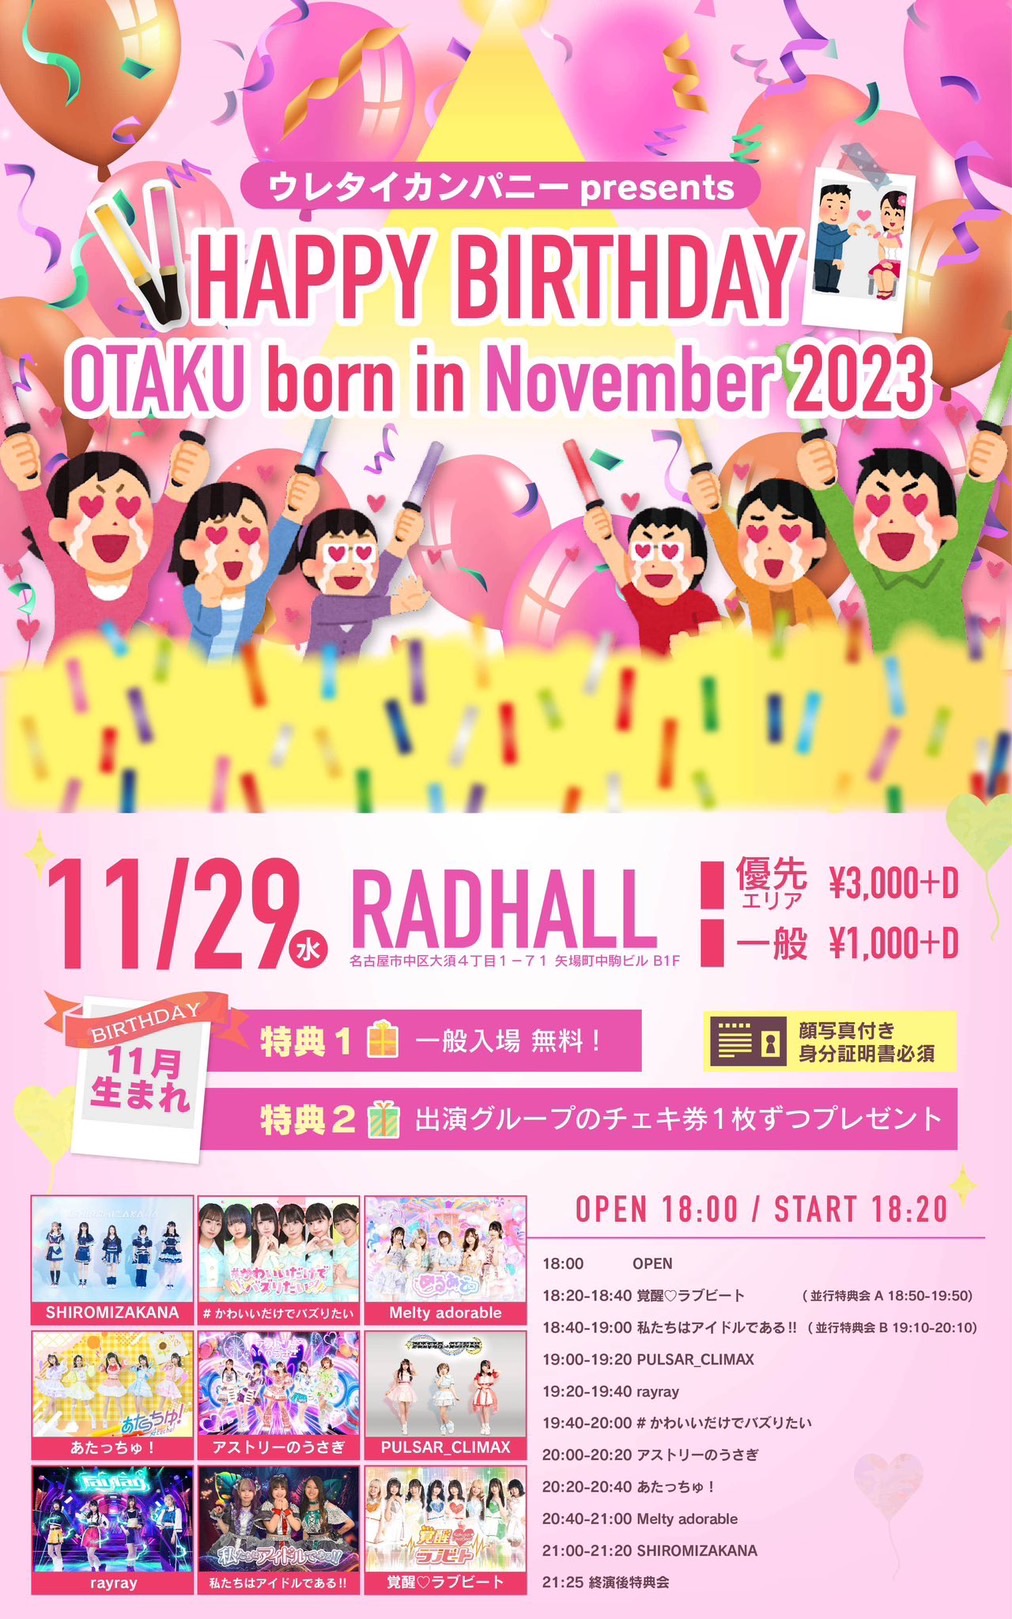 HAPPY BIRTHDAY OTAKU born in November 2023